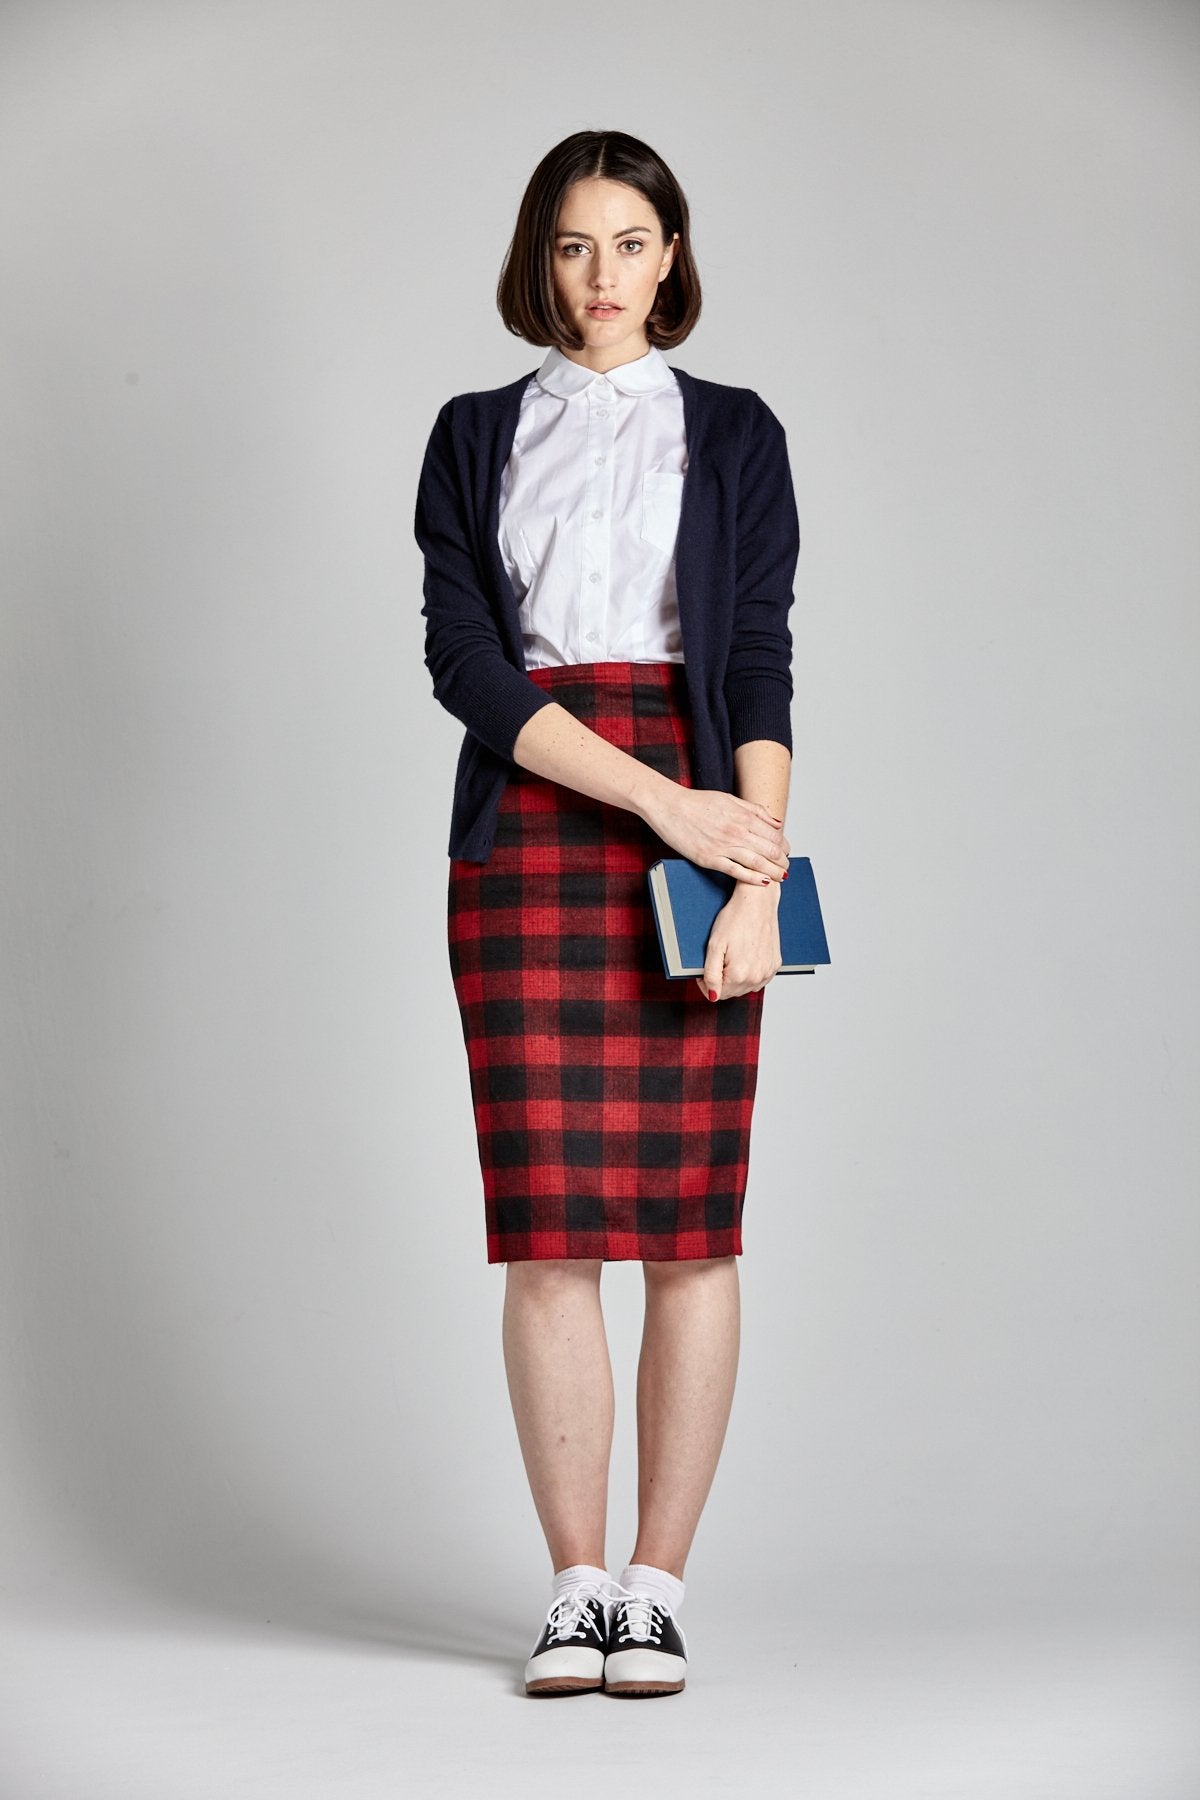 Criss Cross Suspender Skirt – L'école Des Femmes